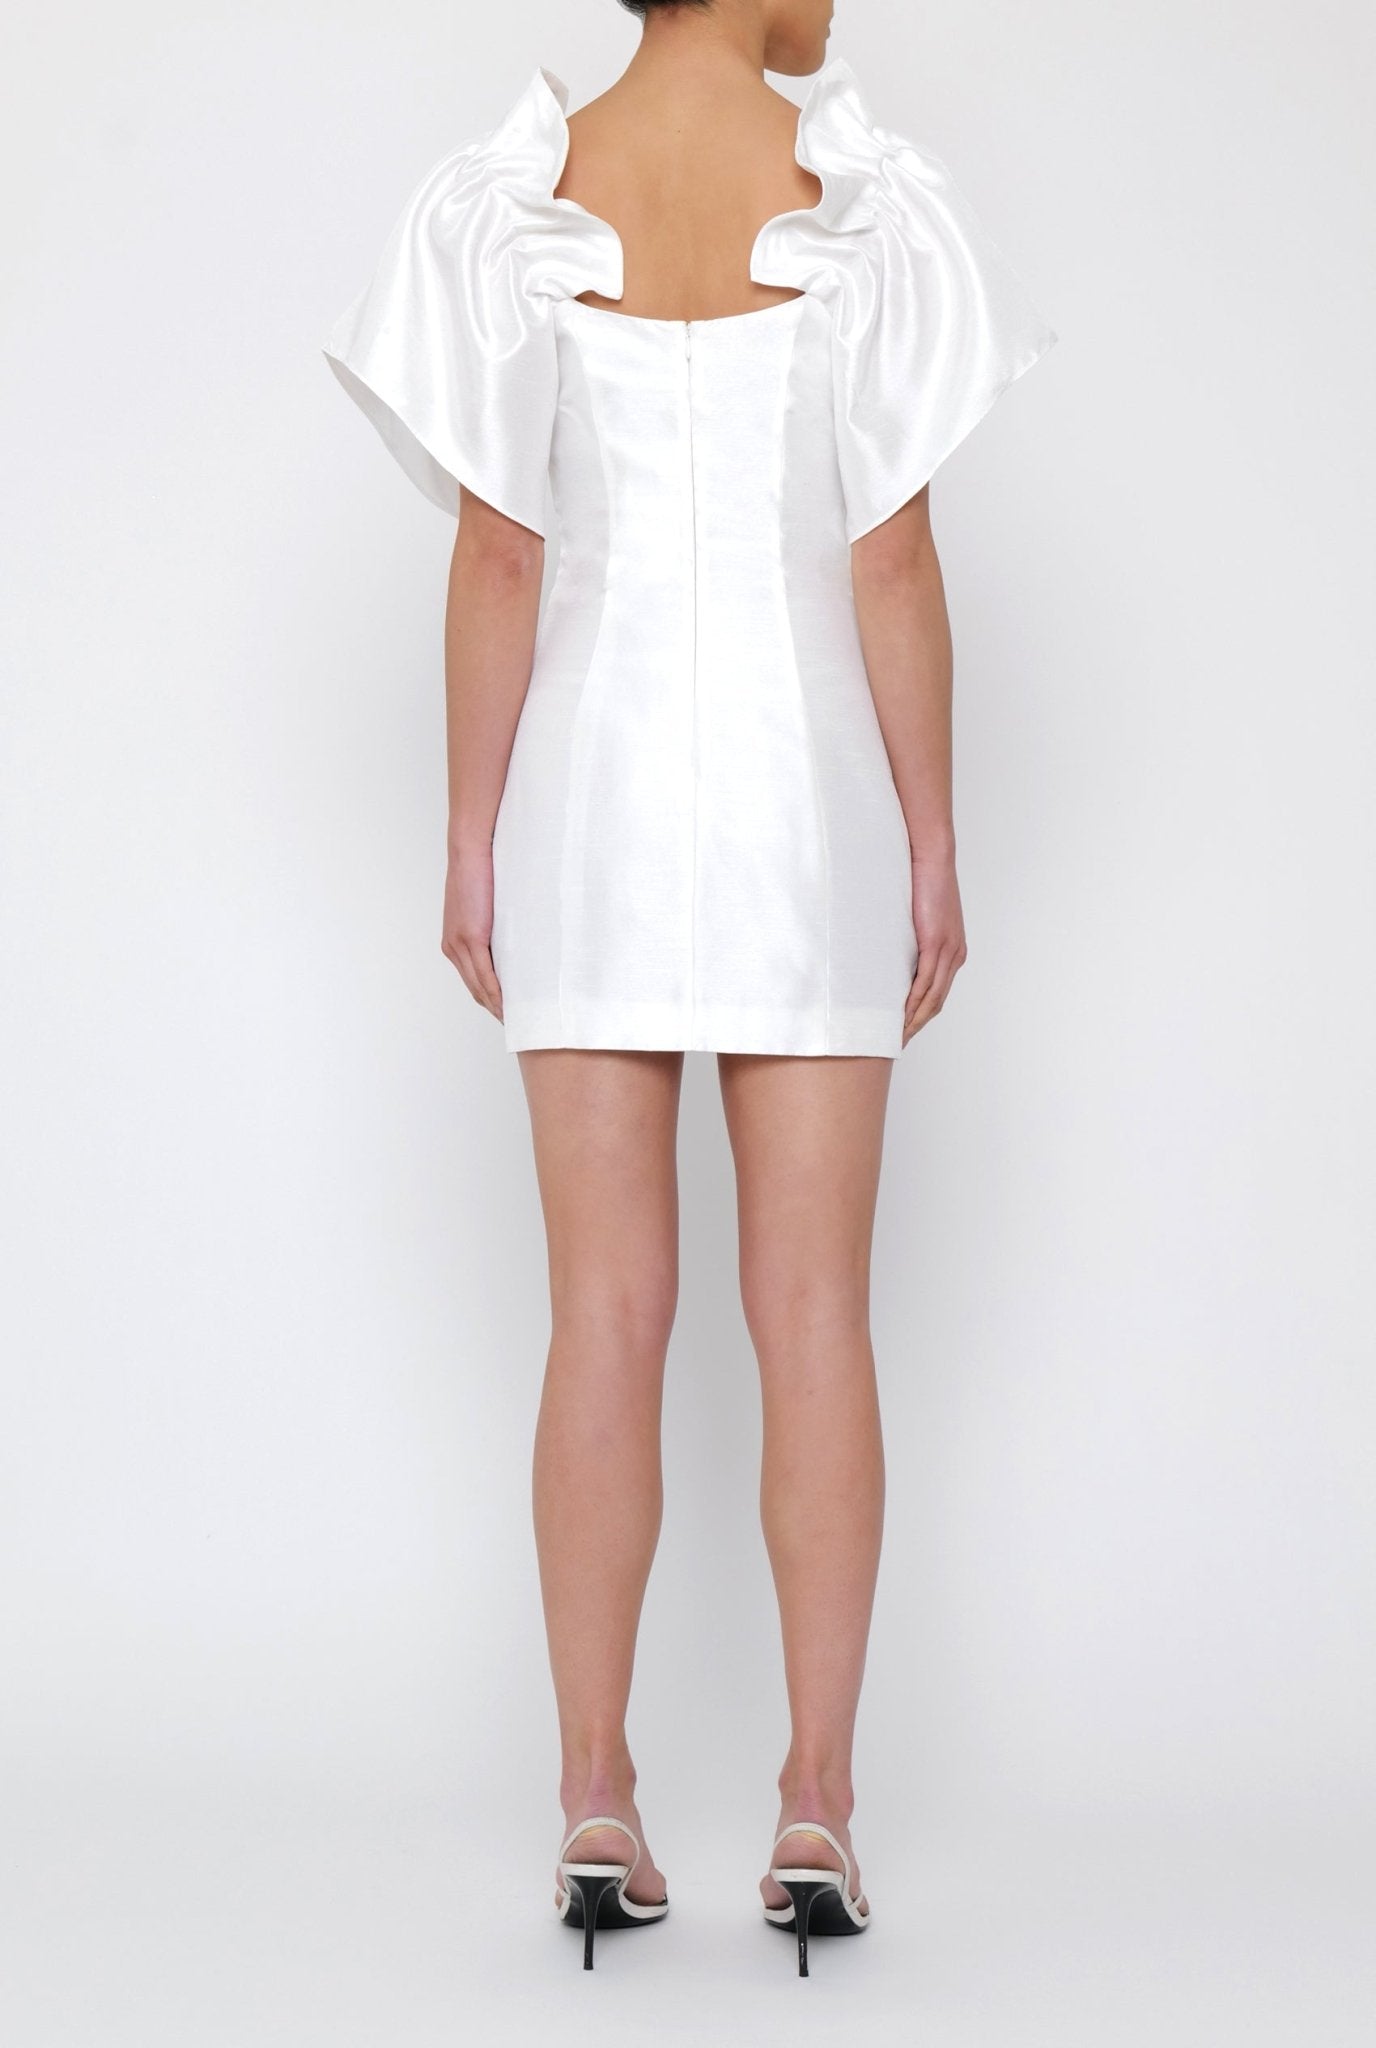 Lilian Dress in White - BOSKEMPER